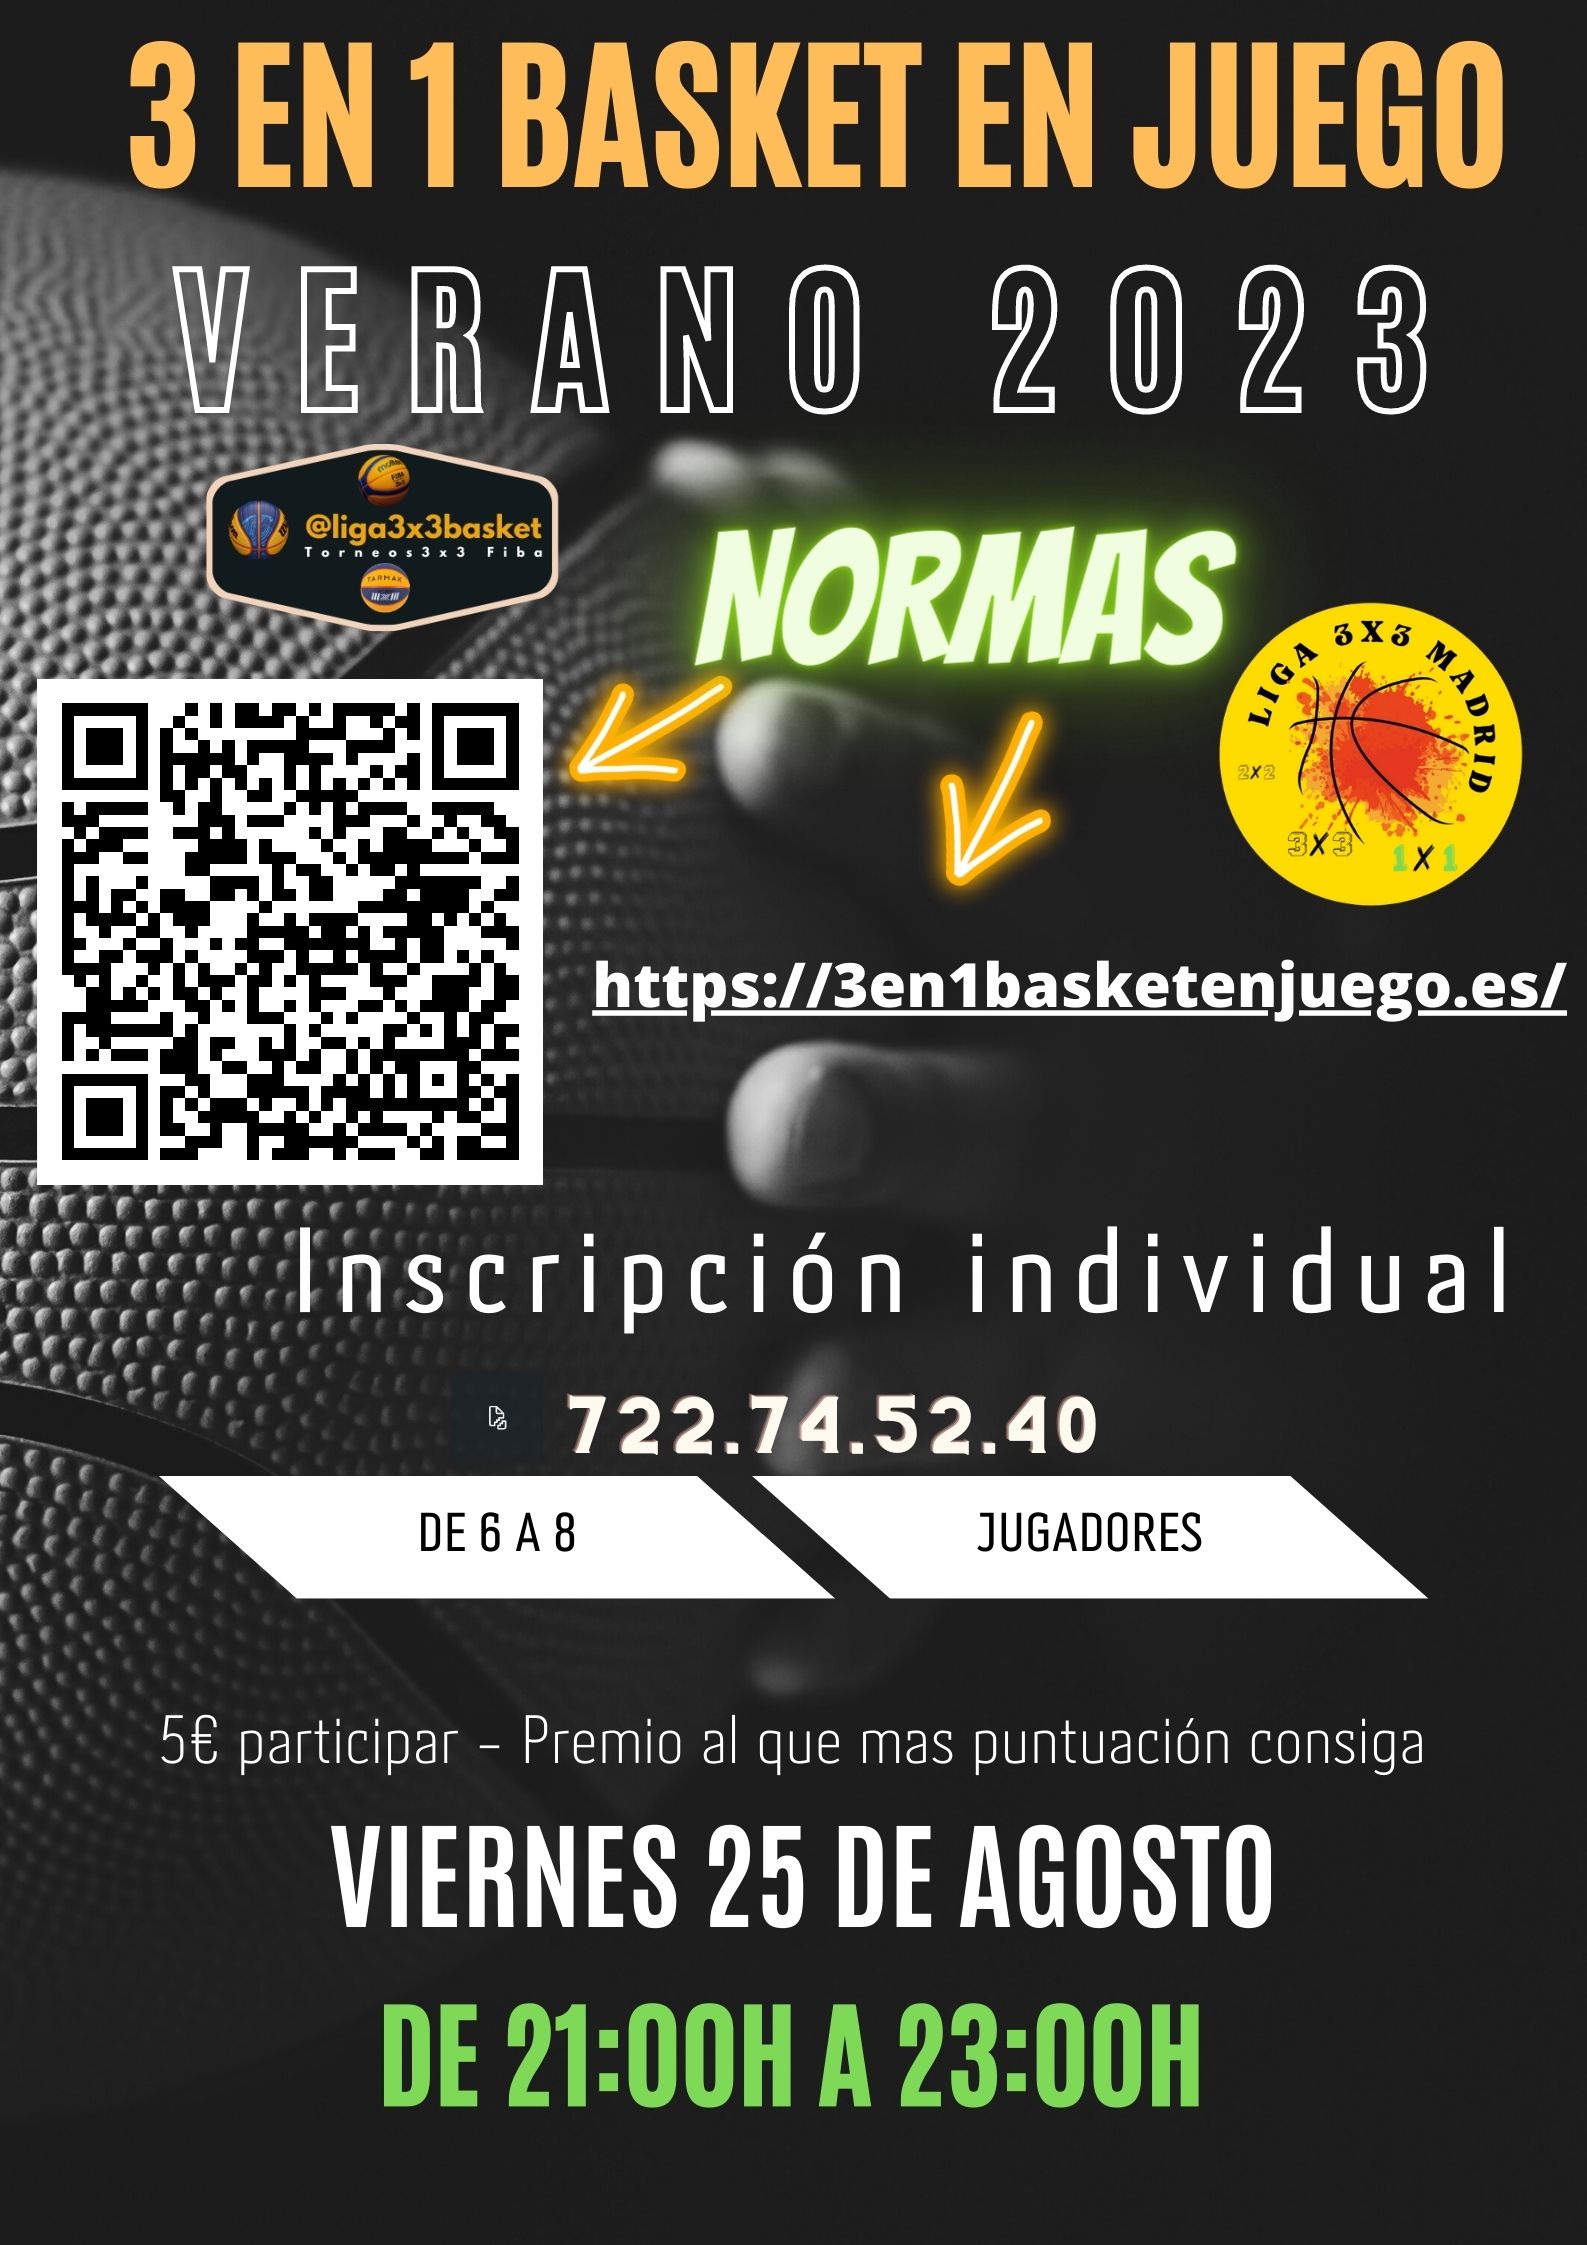 Torneo 3 en 1 Basket en juego (2x1x3) Viernes 25 de Agosto post thumbnail image